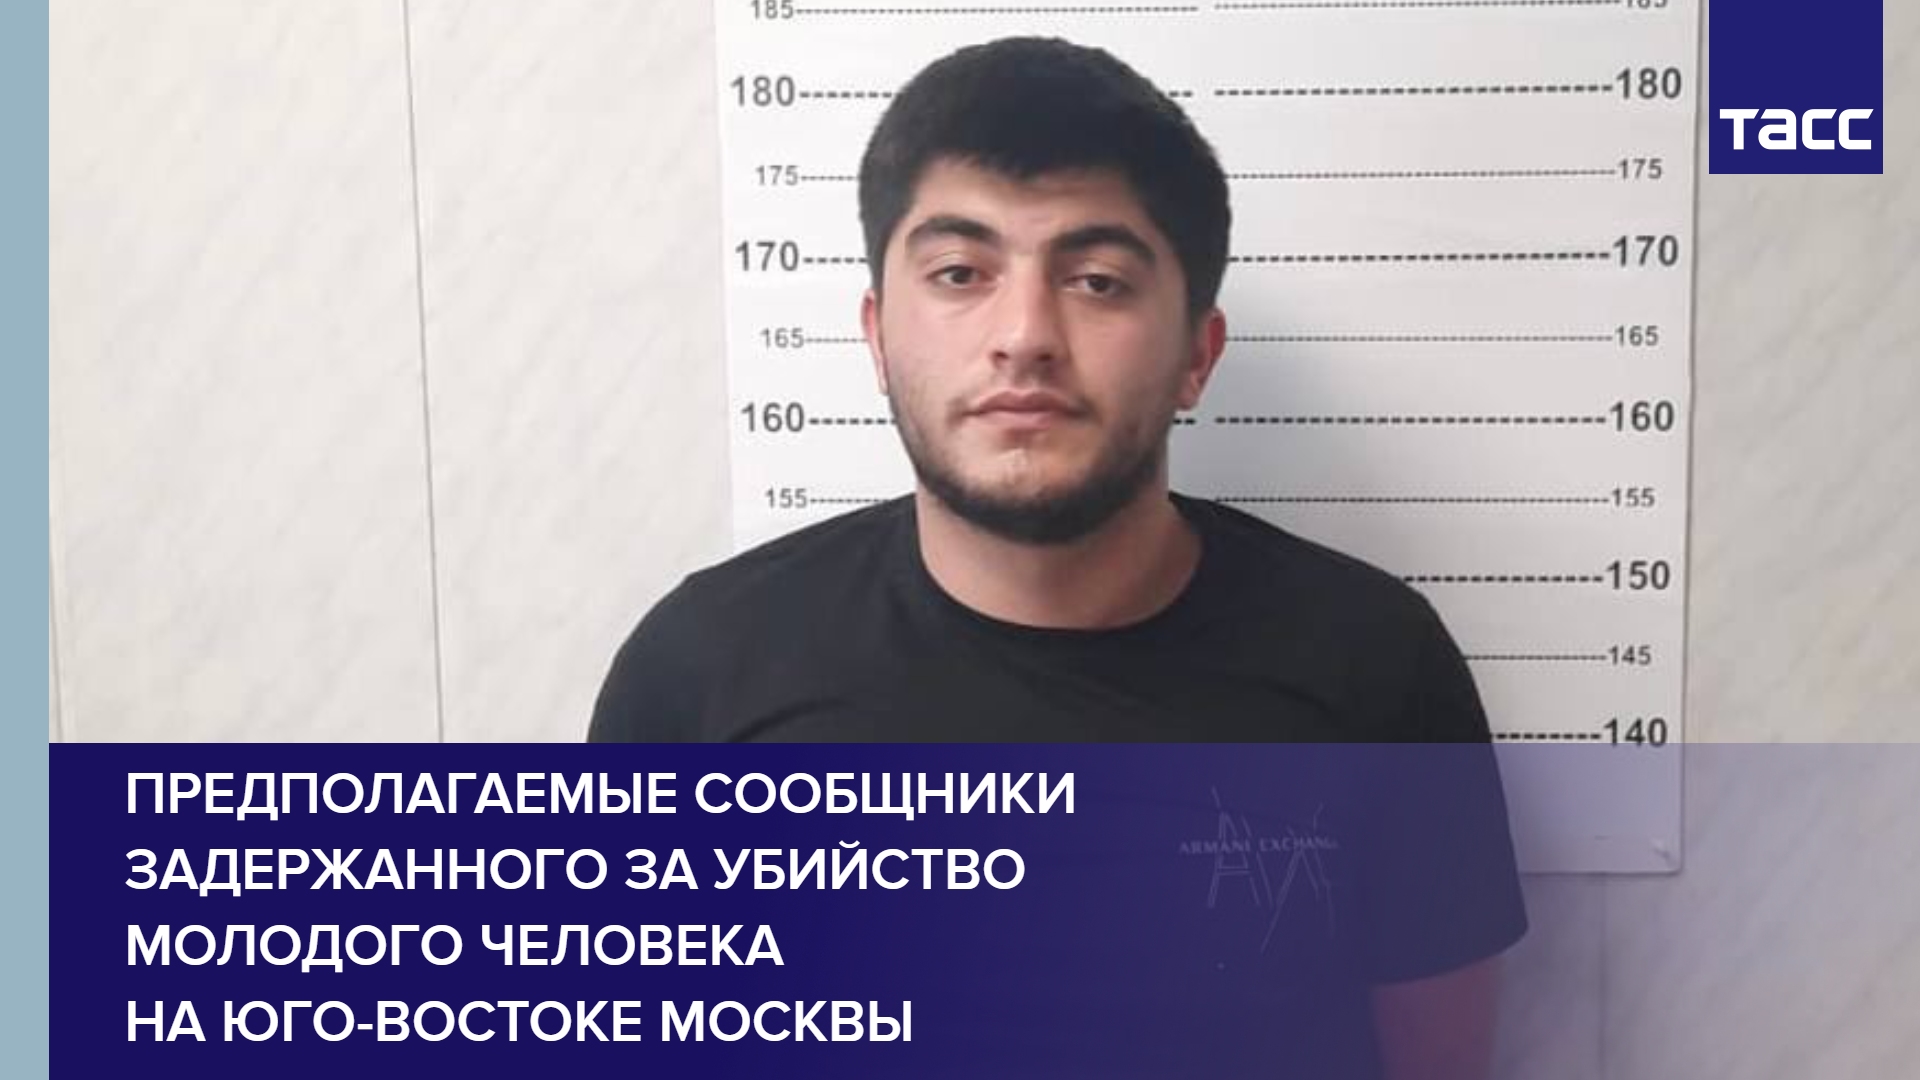 Предполагаемые сообщники задержанного за убийство молодого человека на юго-востоке Москвы